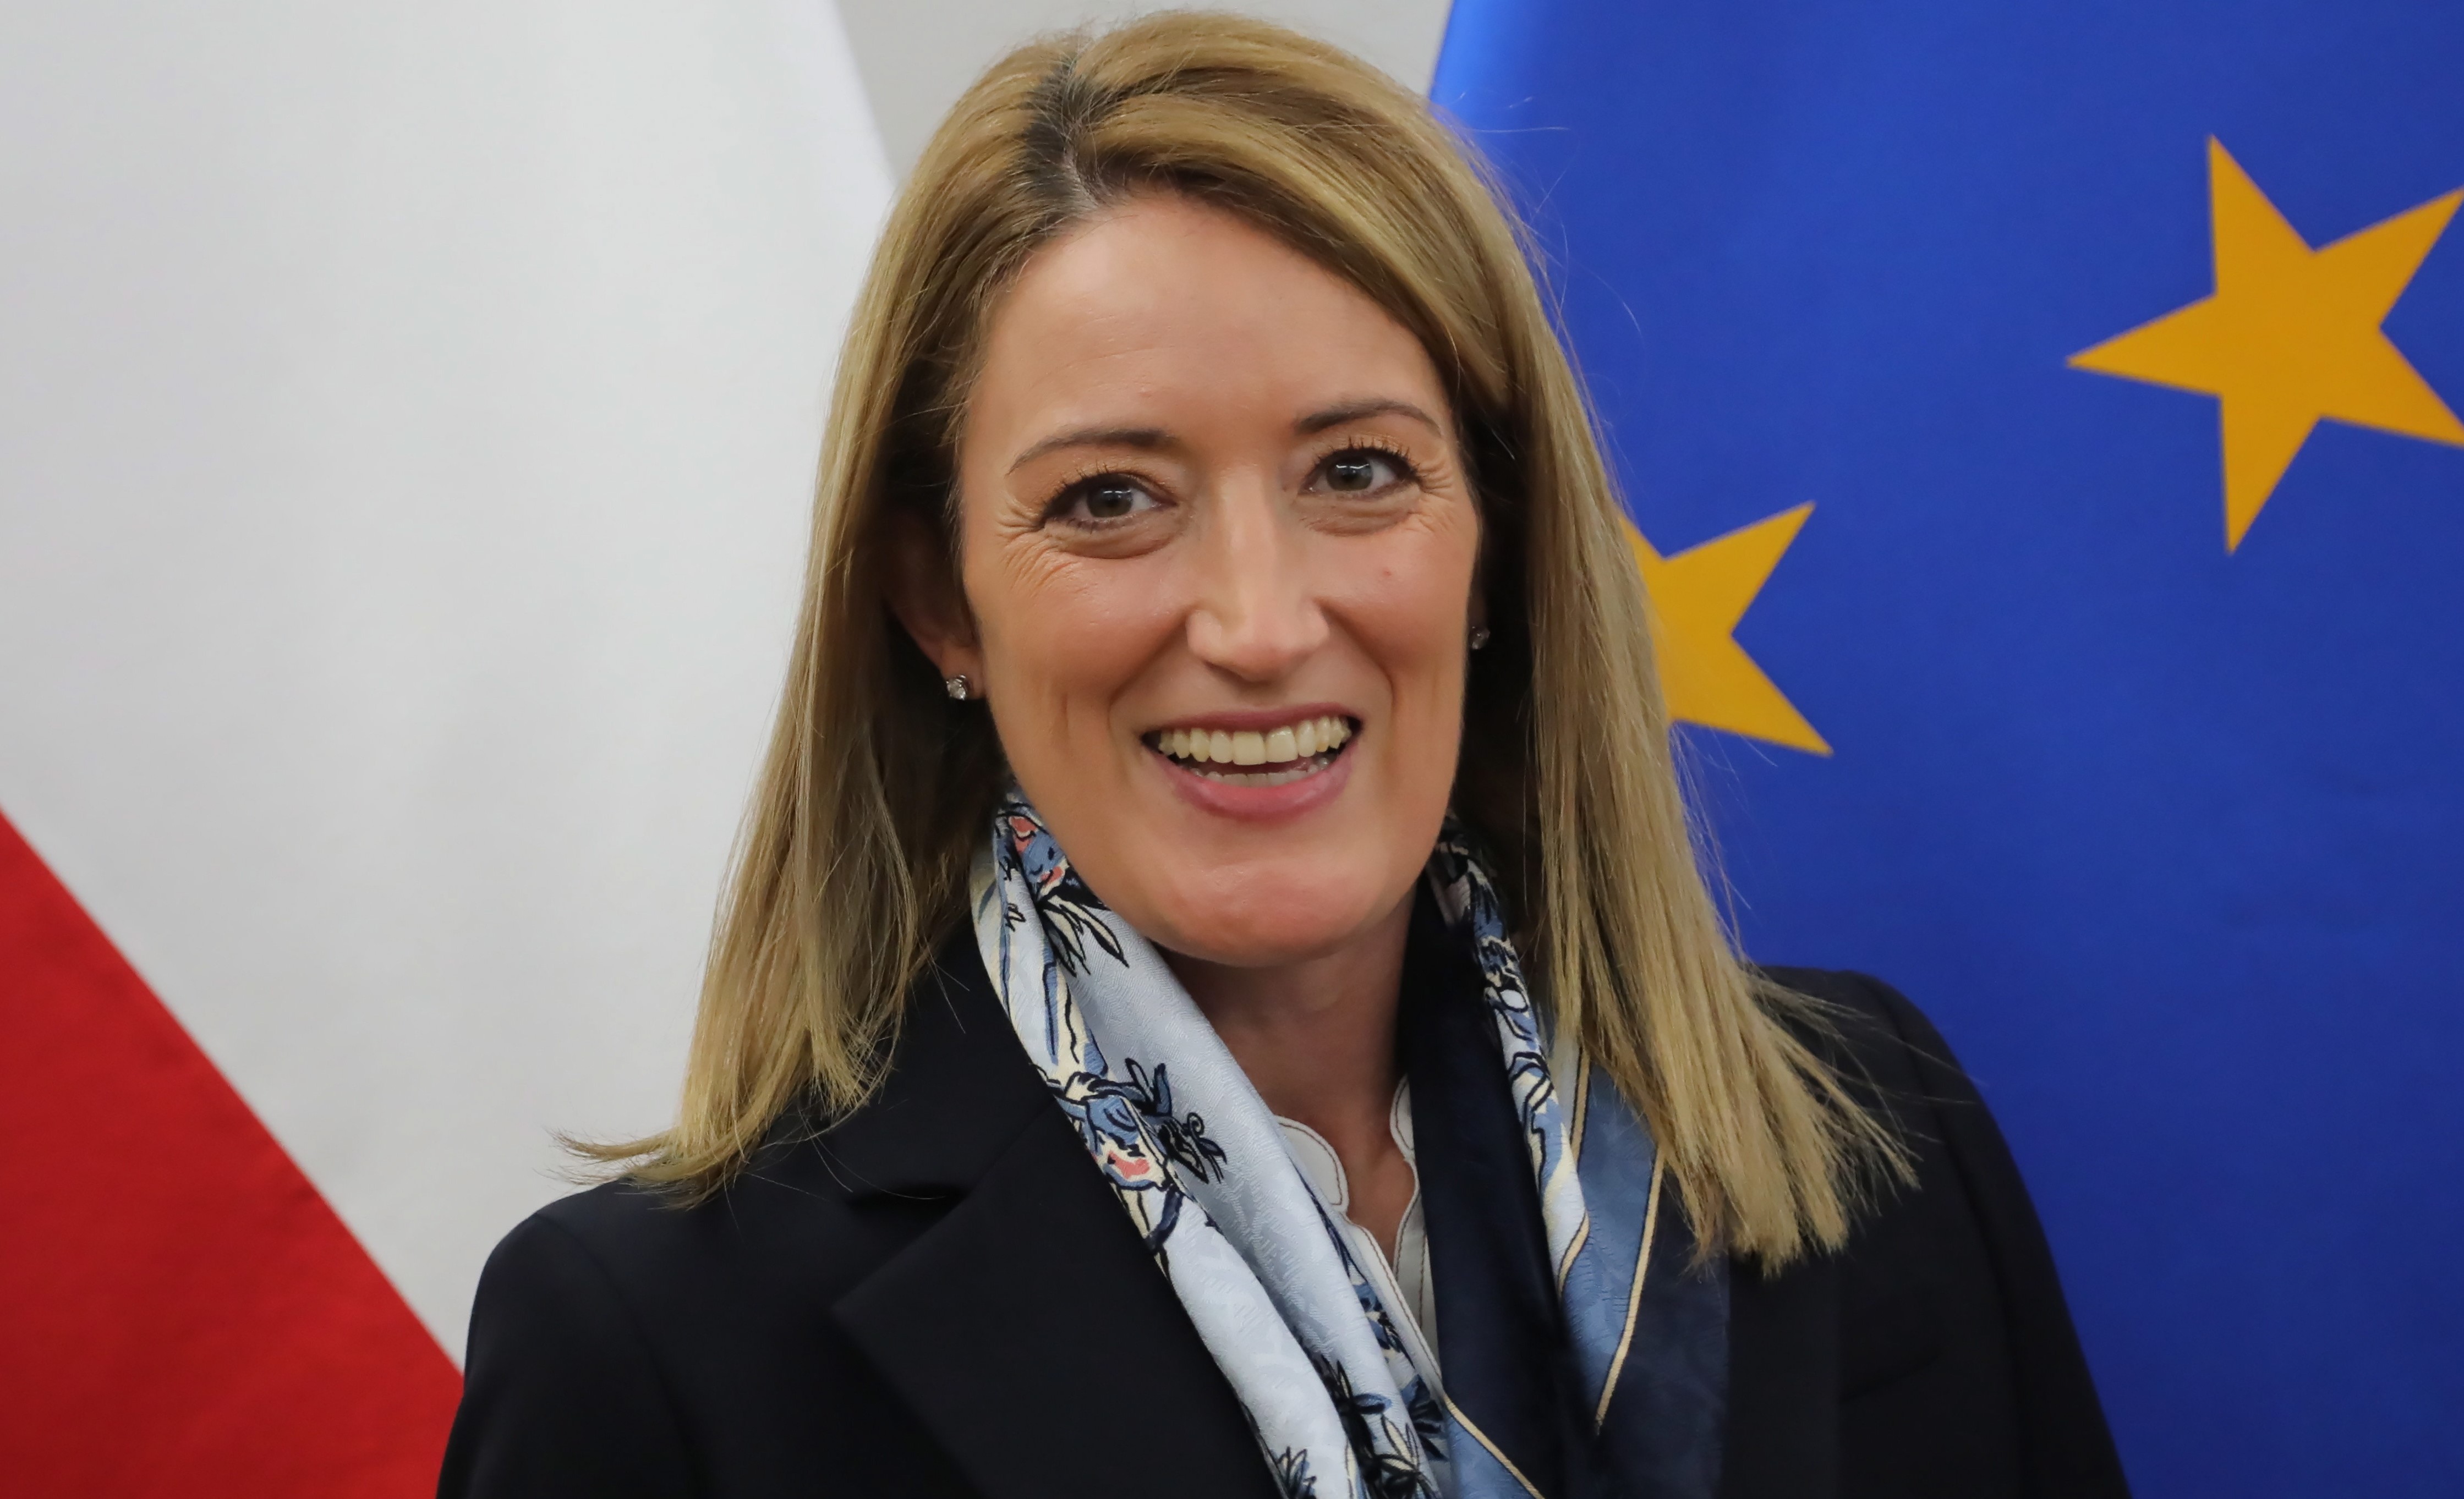 Cine este Roberta Metsola, parlamentarul cu cele mai mari șanse să preia șefia Parlamentului European